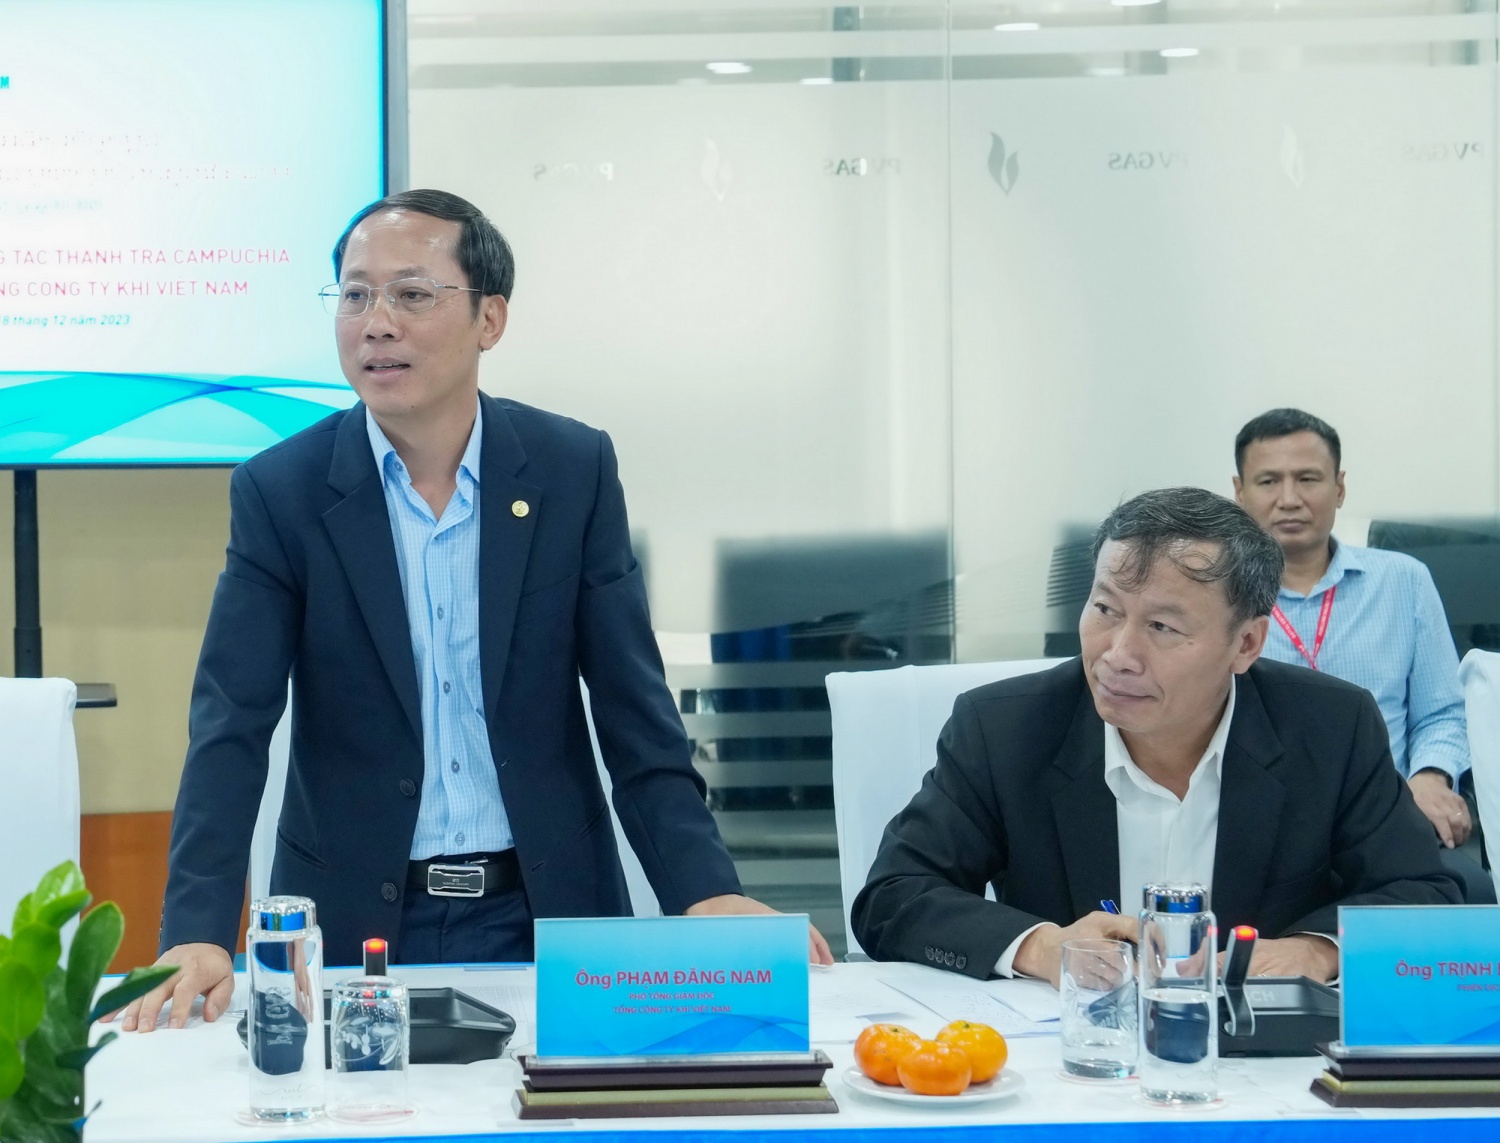 Ông Phạm Đăng Nam – Phó Tổng Giám đốc PV GAS phát biểu chào mừng